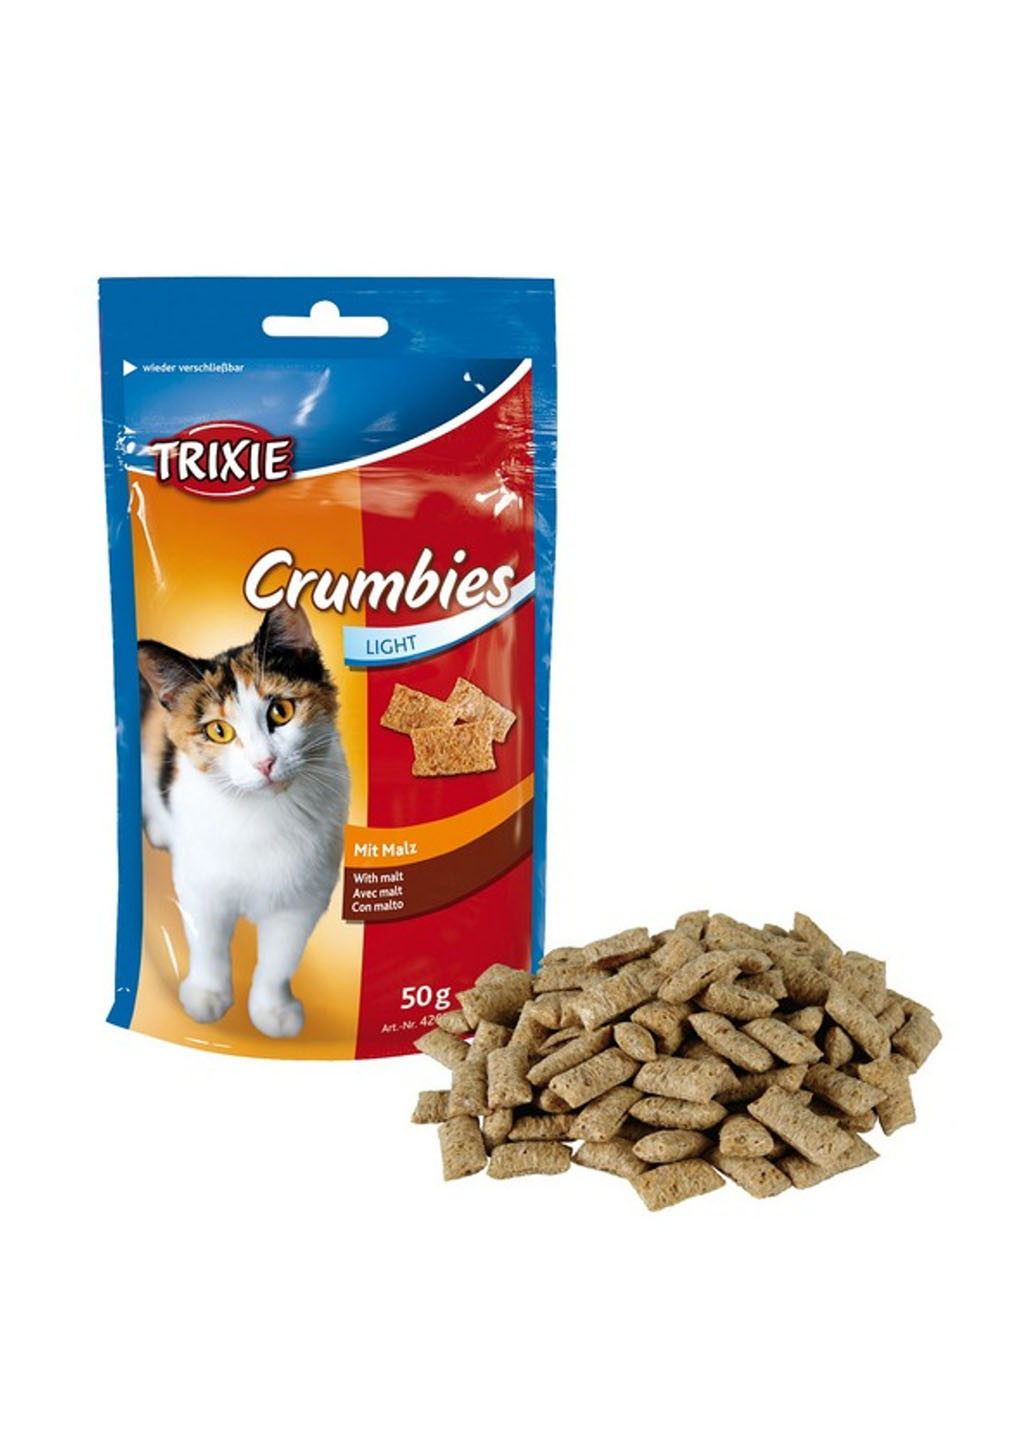 Витамины для кошек Crumbies with Malt (для выведения комочков шерсти), 50 г Trixie (18826013)